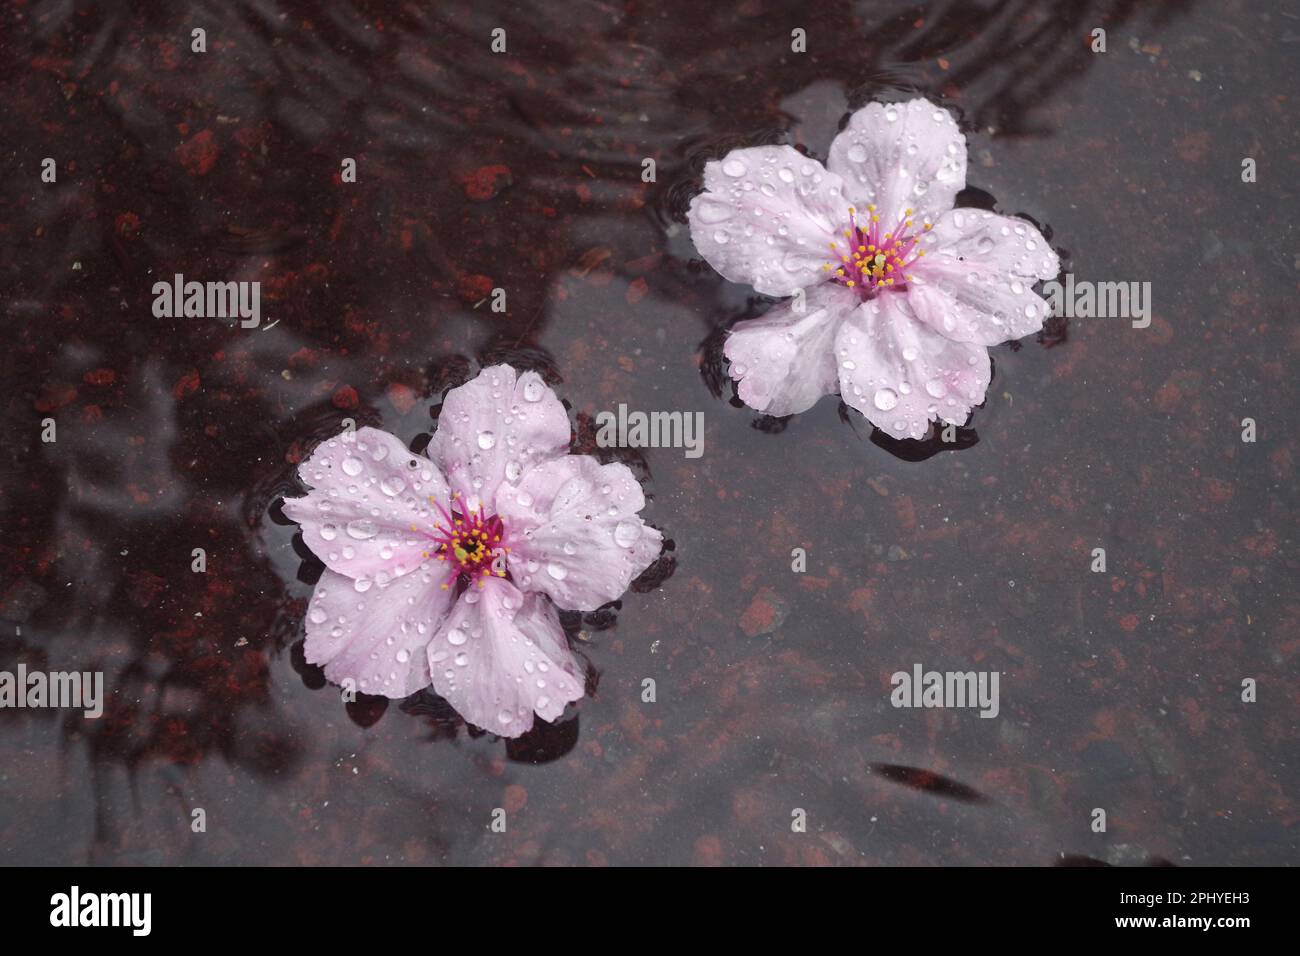 Fallen cherry blossom in the rain Stock Photo